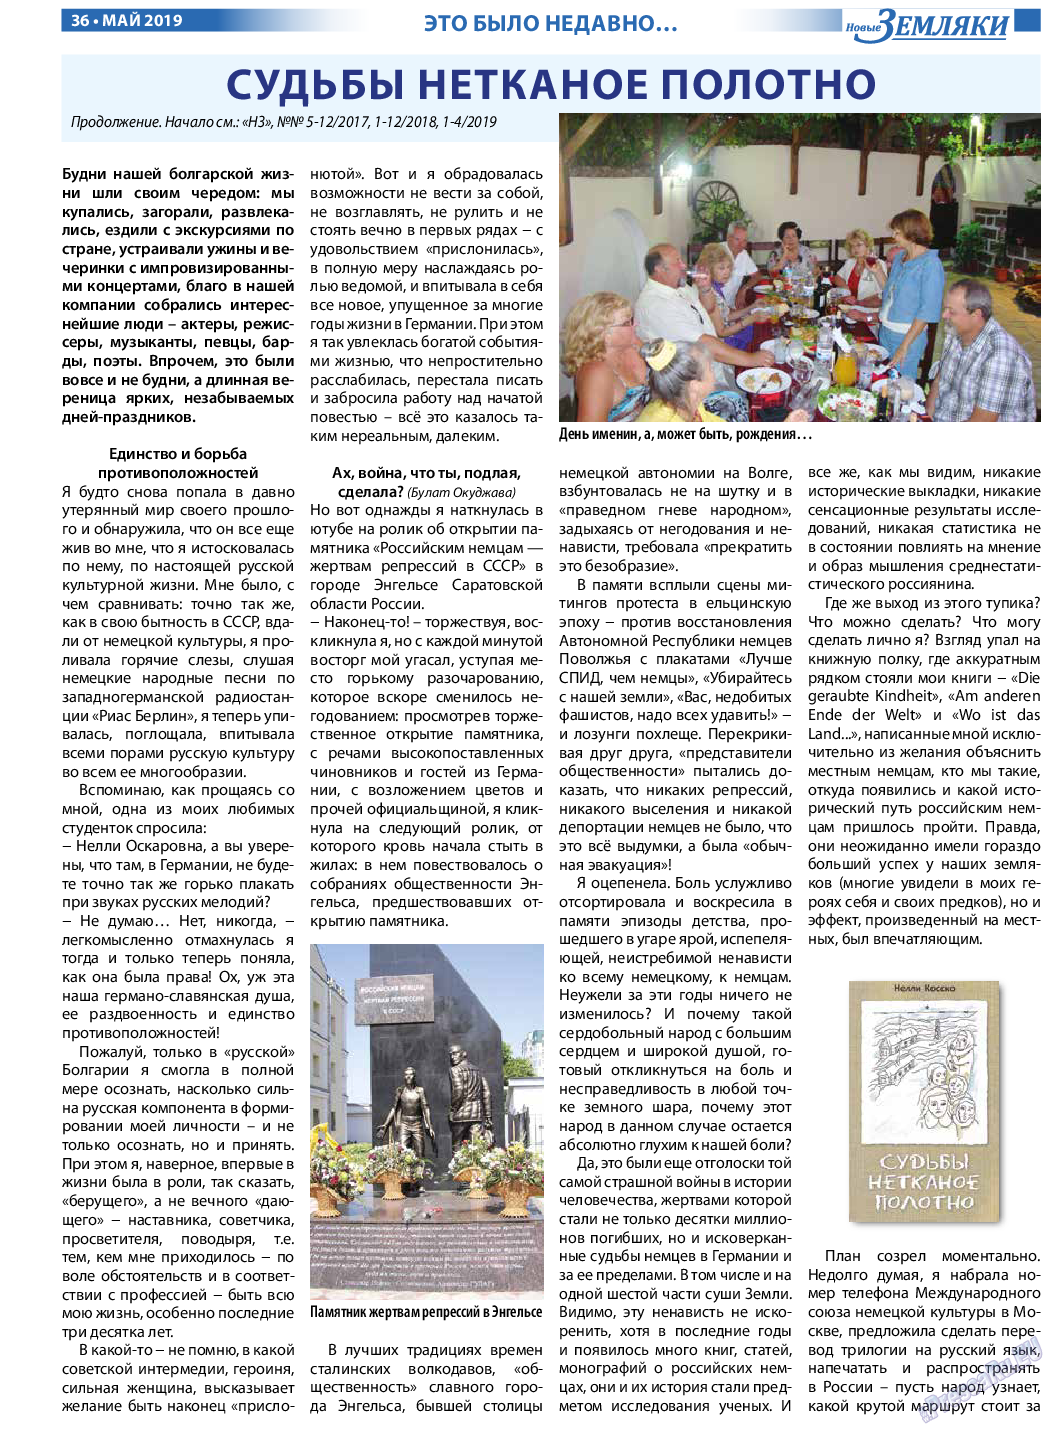 Новые Земляки (газета). 2019 год, номер 5, стр. 36